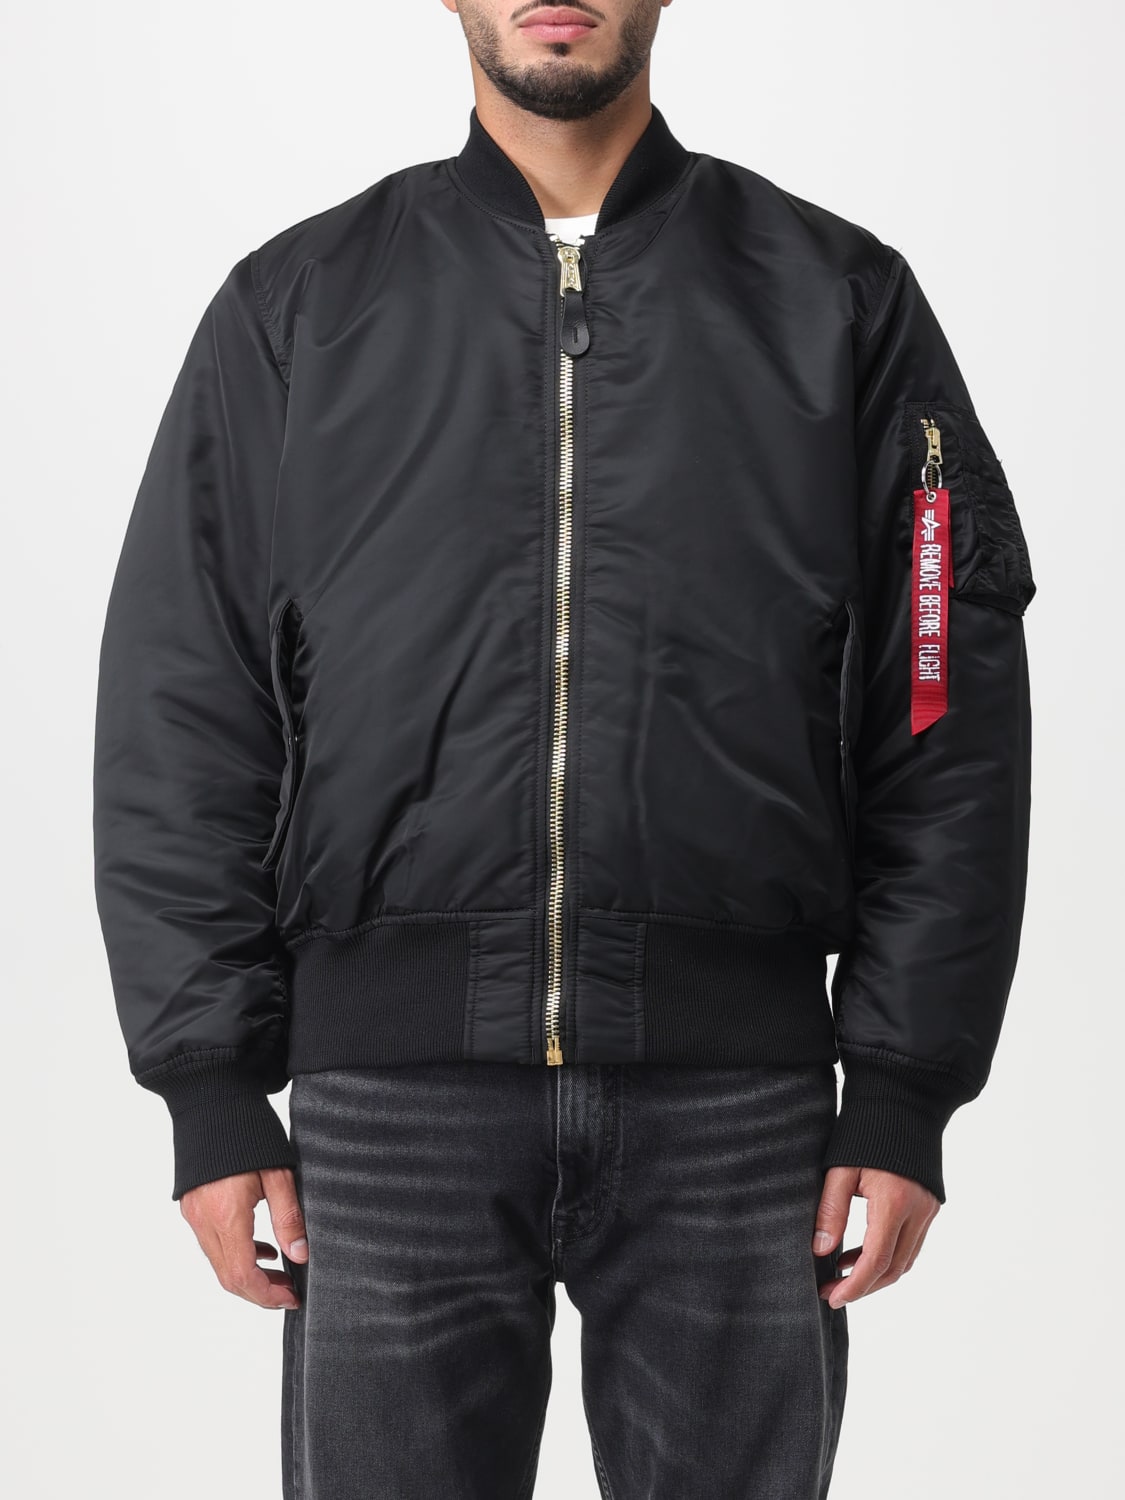 online for Black - Alpha man 100101 jacket | at INDUSTRIES: Industries jacket ALPHA